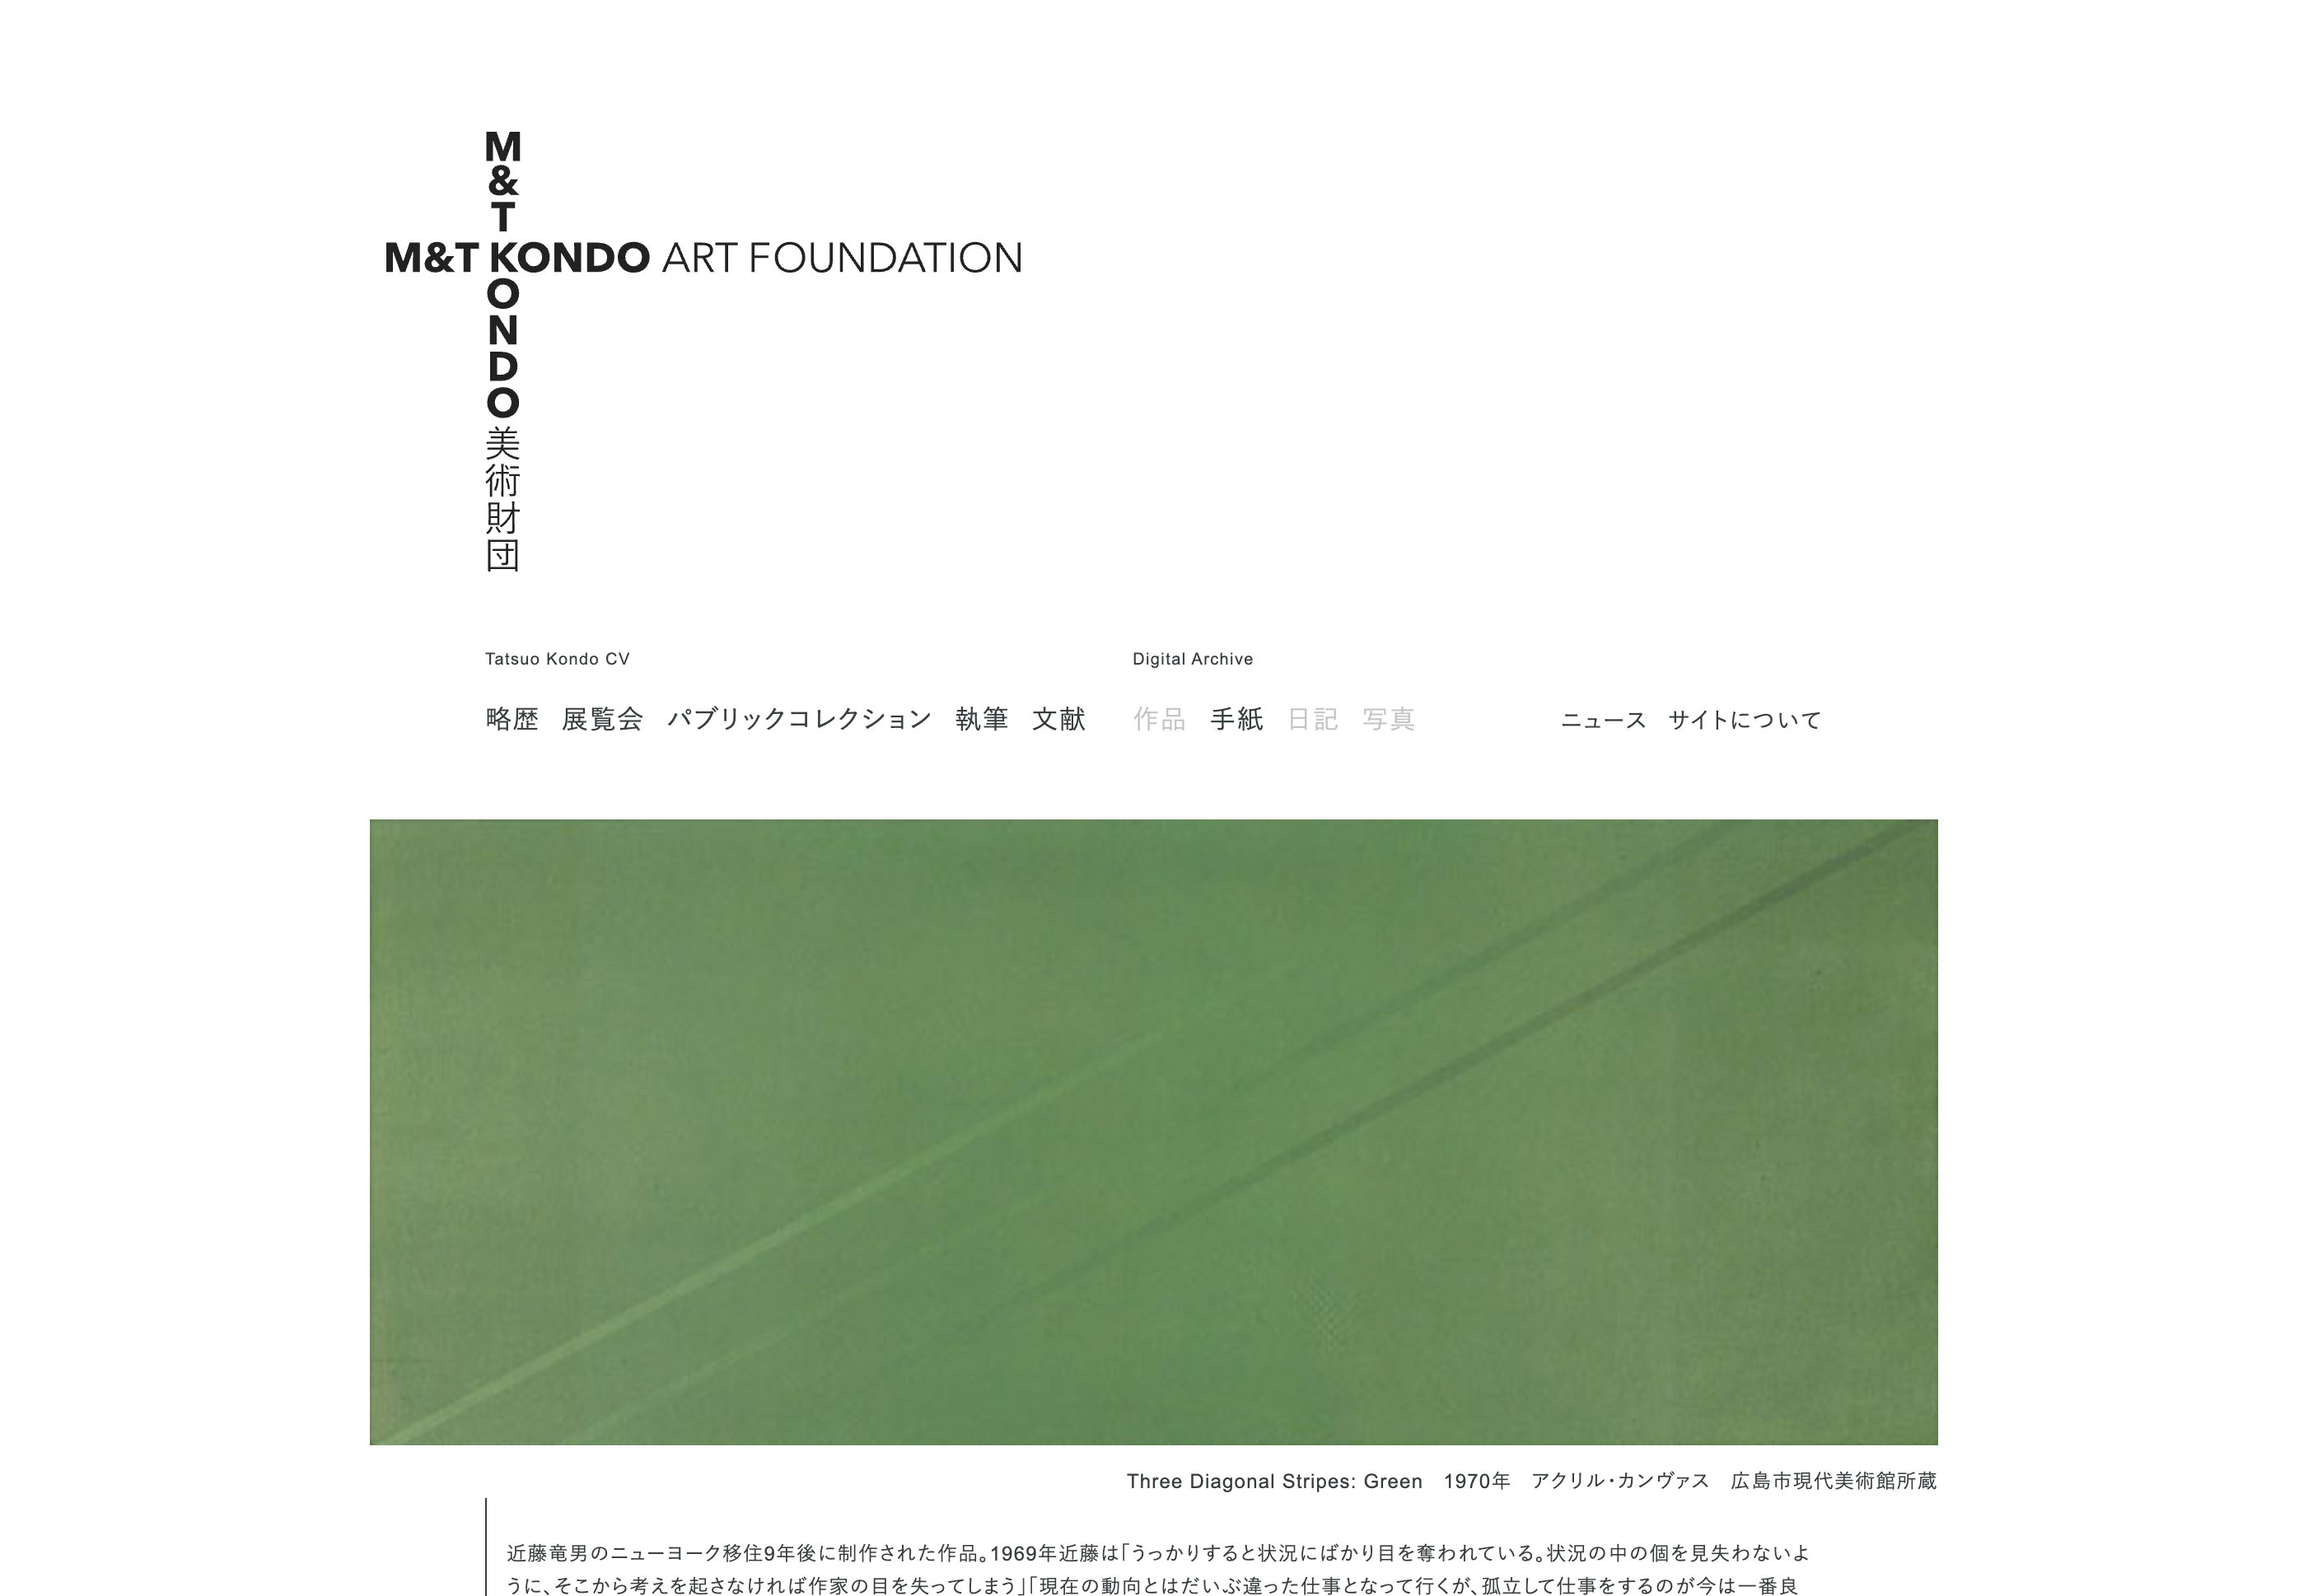 近藤竜男 M&T KONDO美術財団 Tatsuo KONDO - M&T KONDO ART FOUNDATION